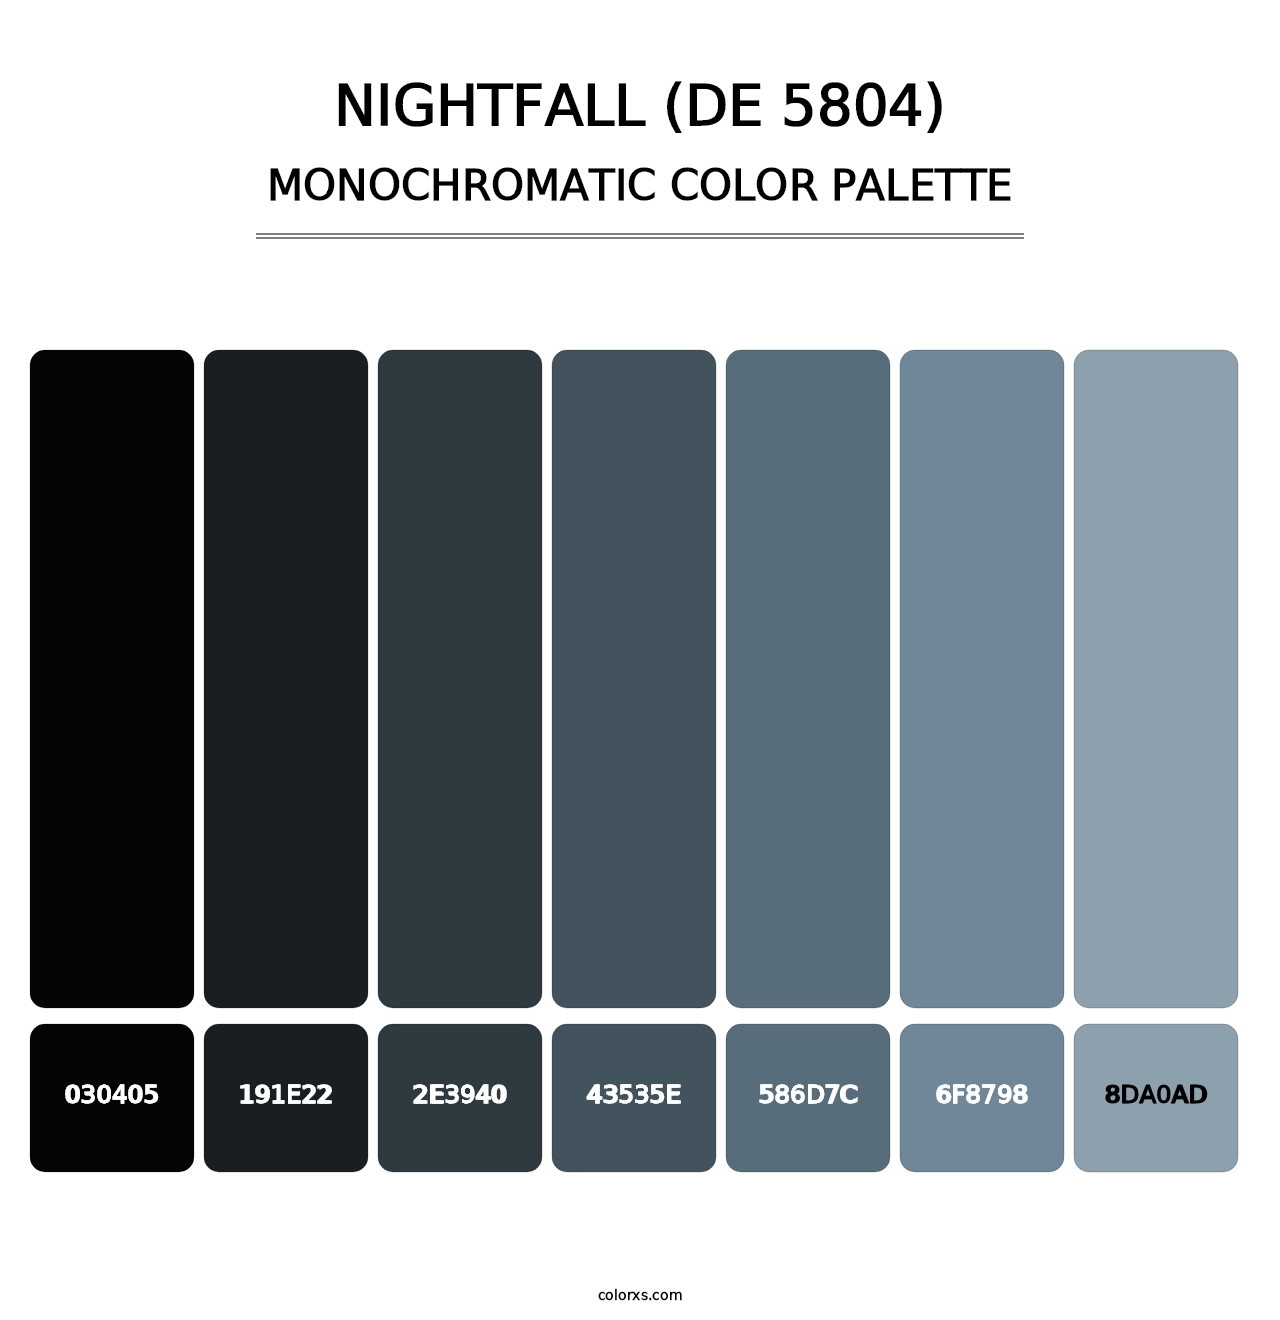 Nightfall (DE 5804) - Monochromatic Color Palette